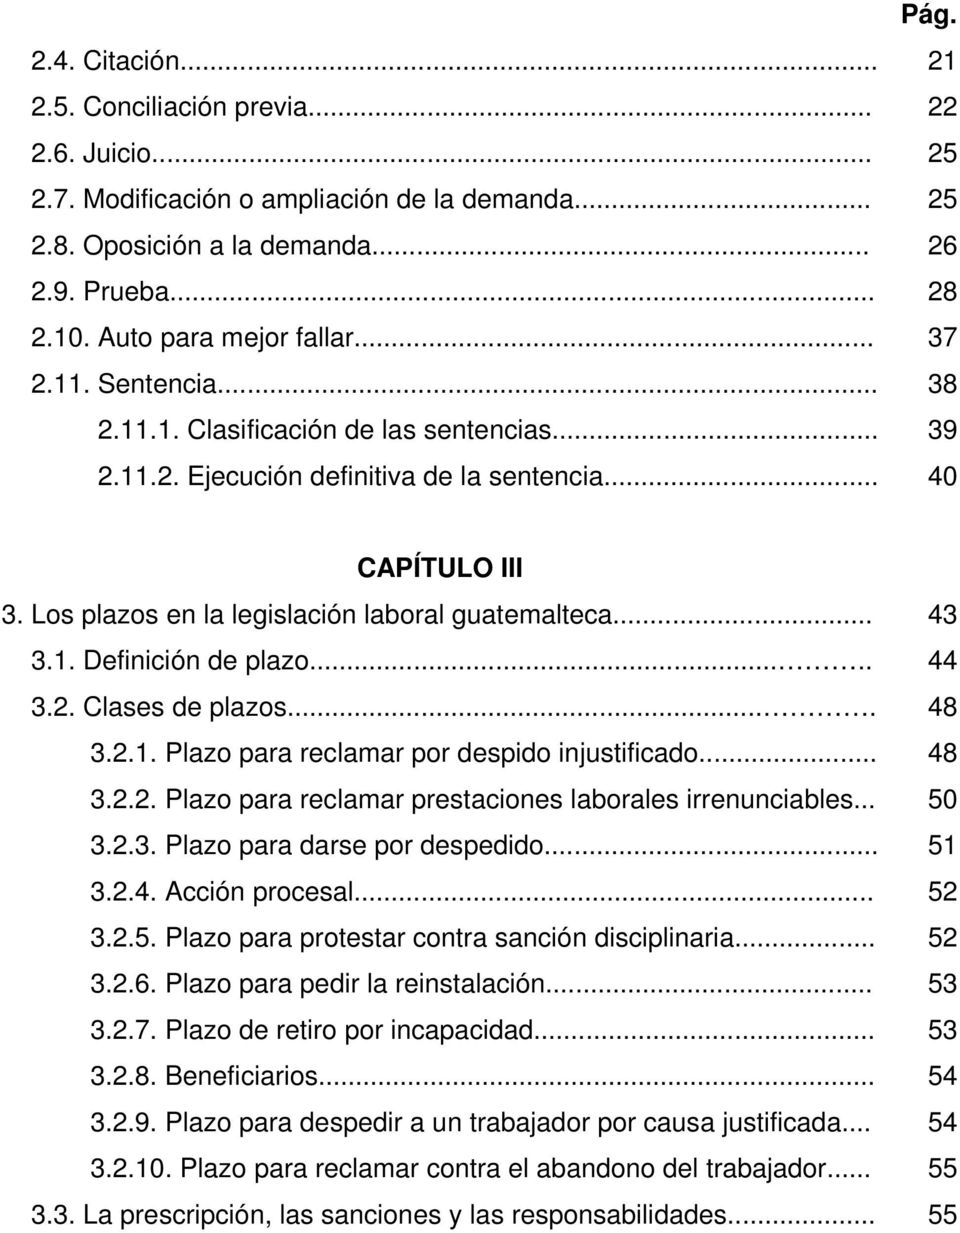 Los plazos en la legislación laboral guatemalteca... 3.1. Definición de plazo..... 3.2. Clases de plazos.... 3.2.1. Plazo para reclamar por despido injustificado... 3.2.2. Plazo para reclamar prestaciones laborales irrenunciables.